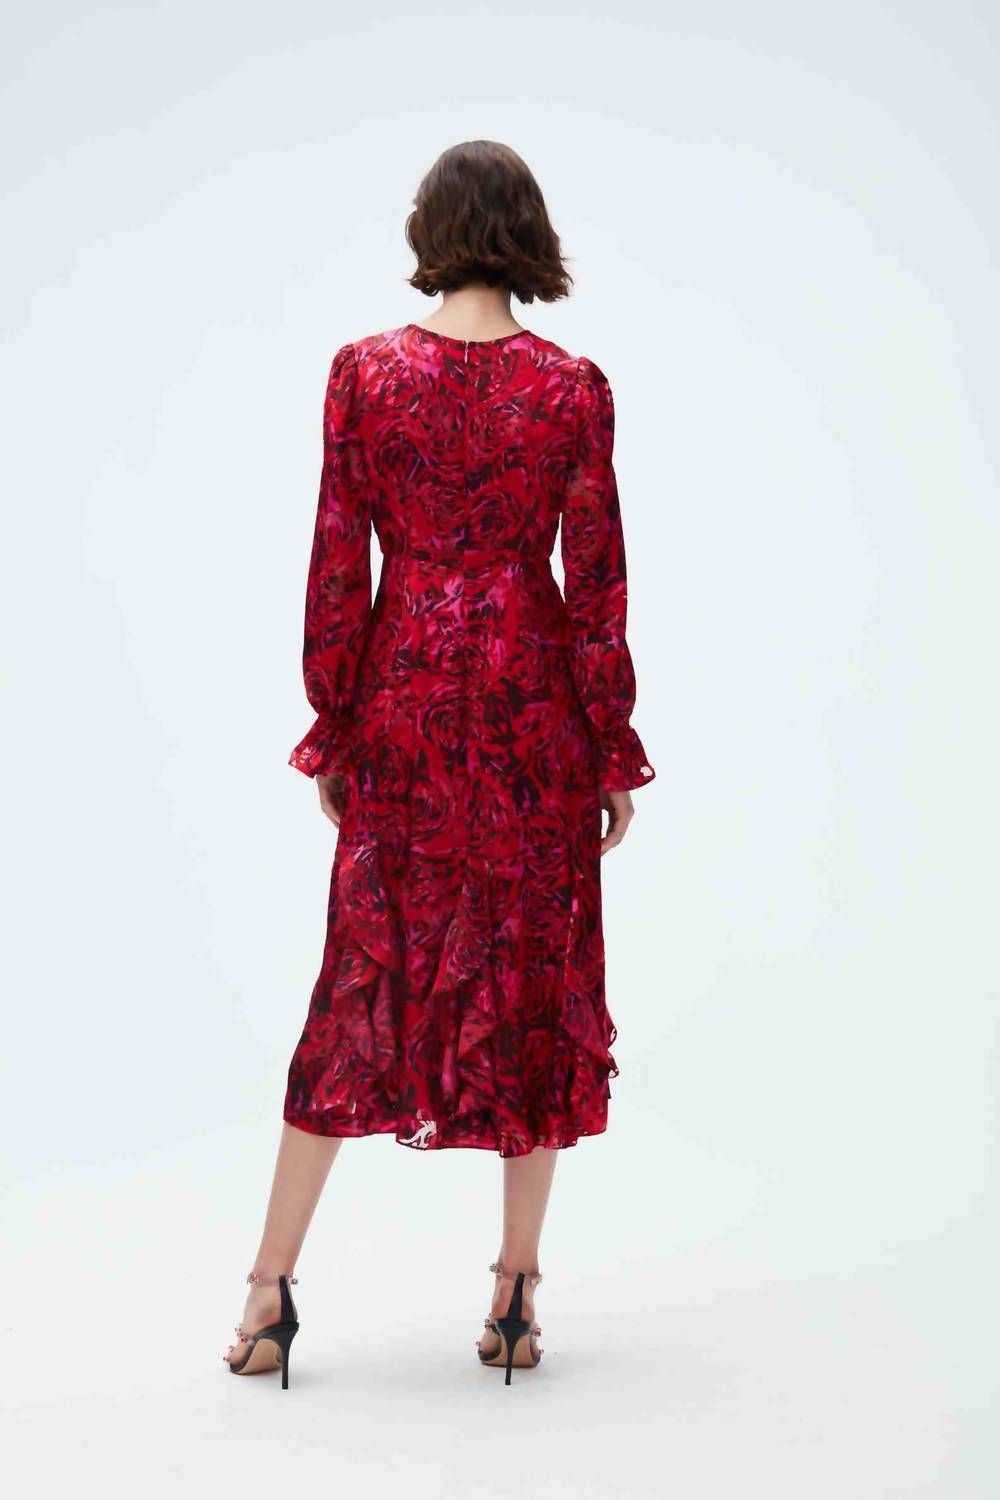 Style 1-1522798599-2168 Diane von Furstenberg Size 8 High Neck Red Cocktail Dress on Queenly